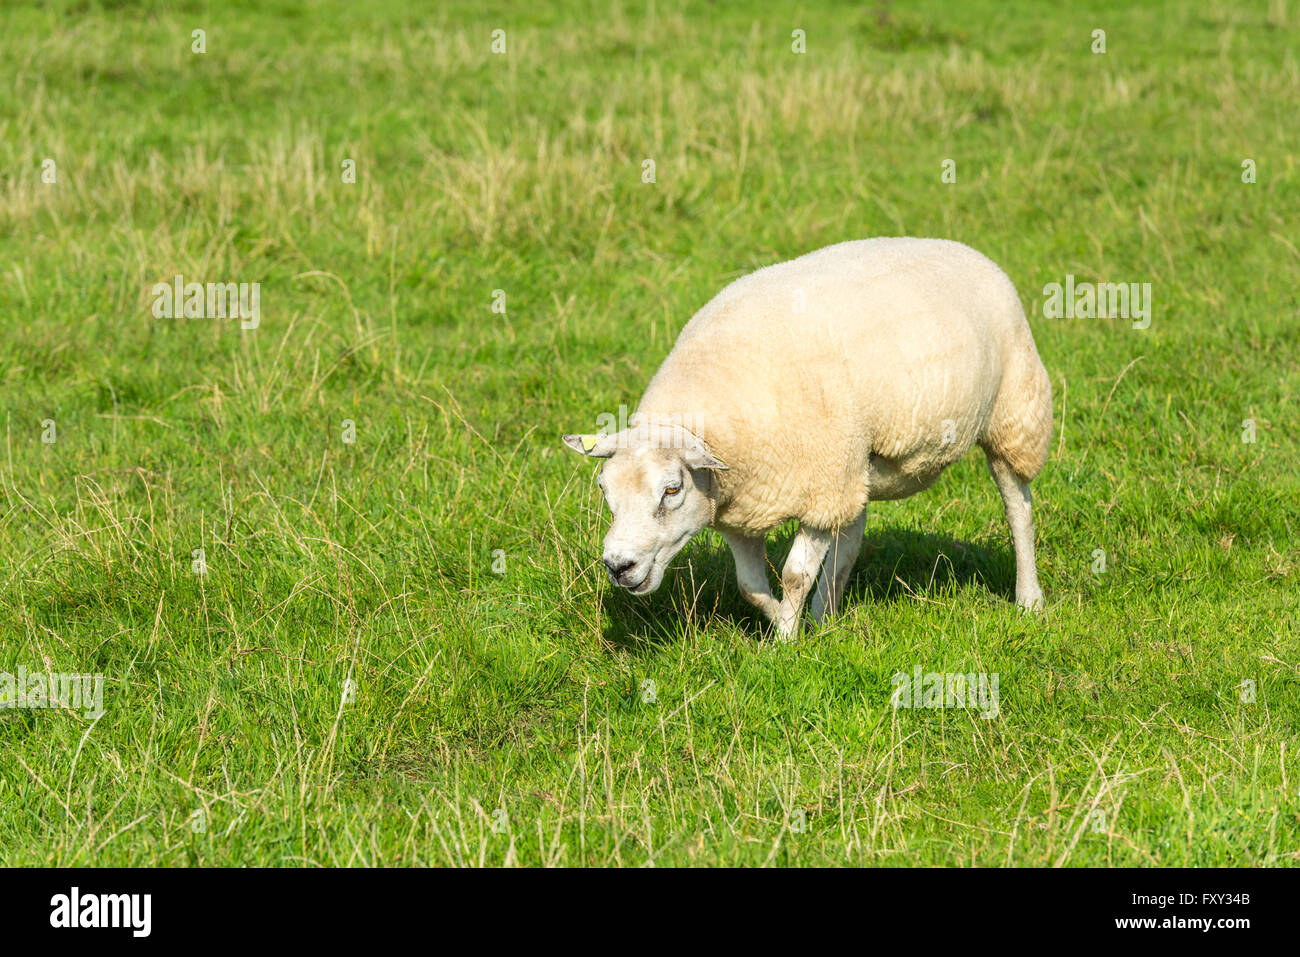 Un mouton blanc mange de l'herbe verte à la ferme Banque D'Images